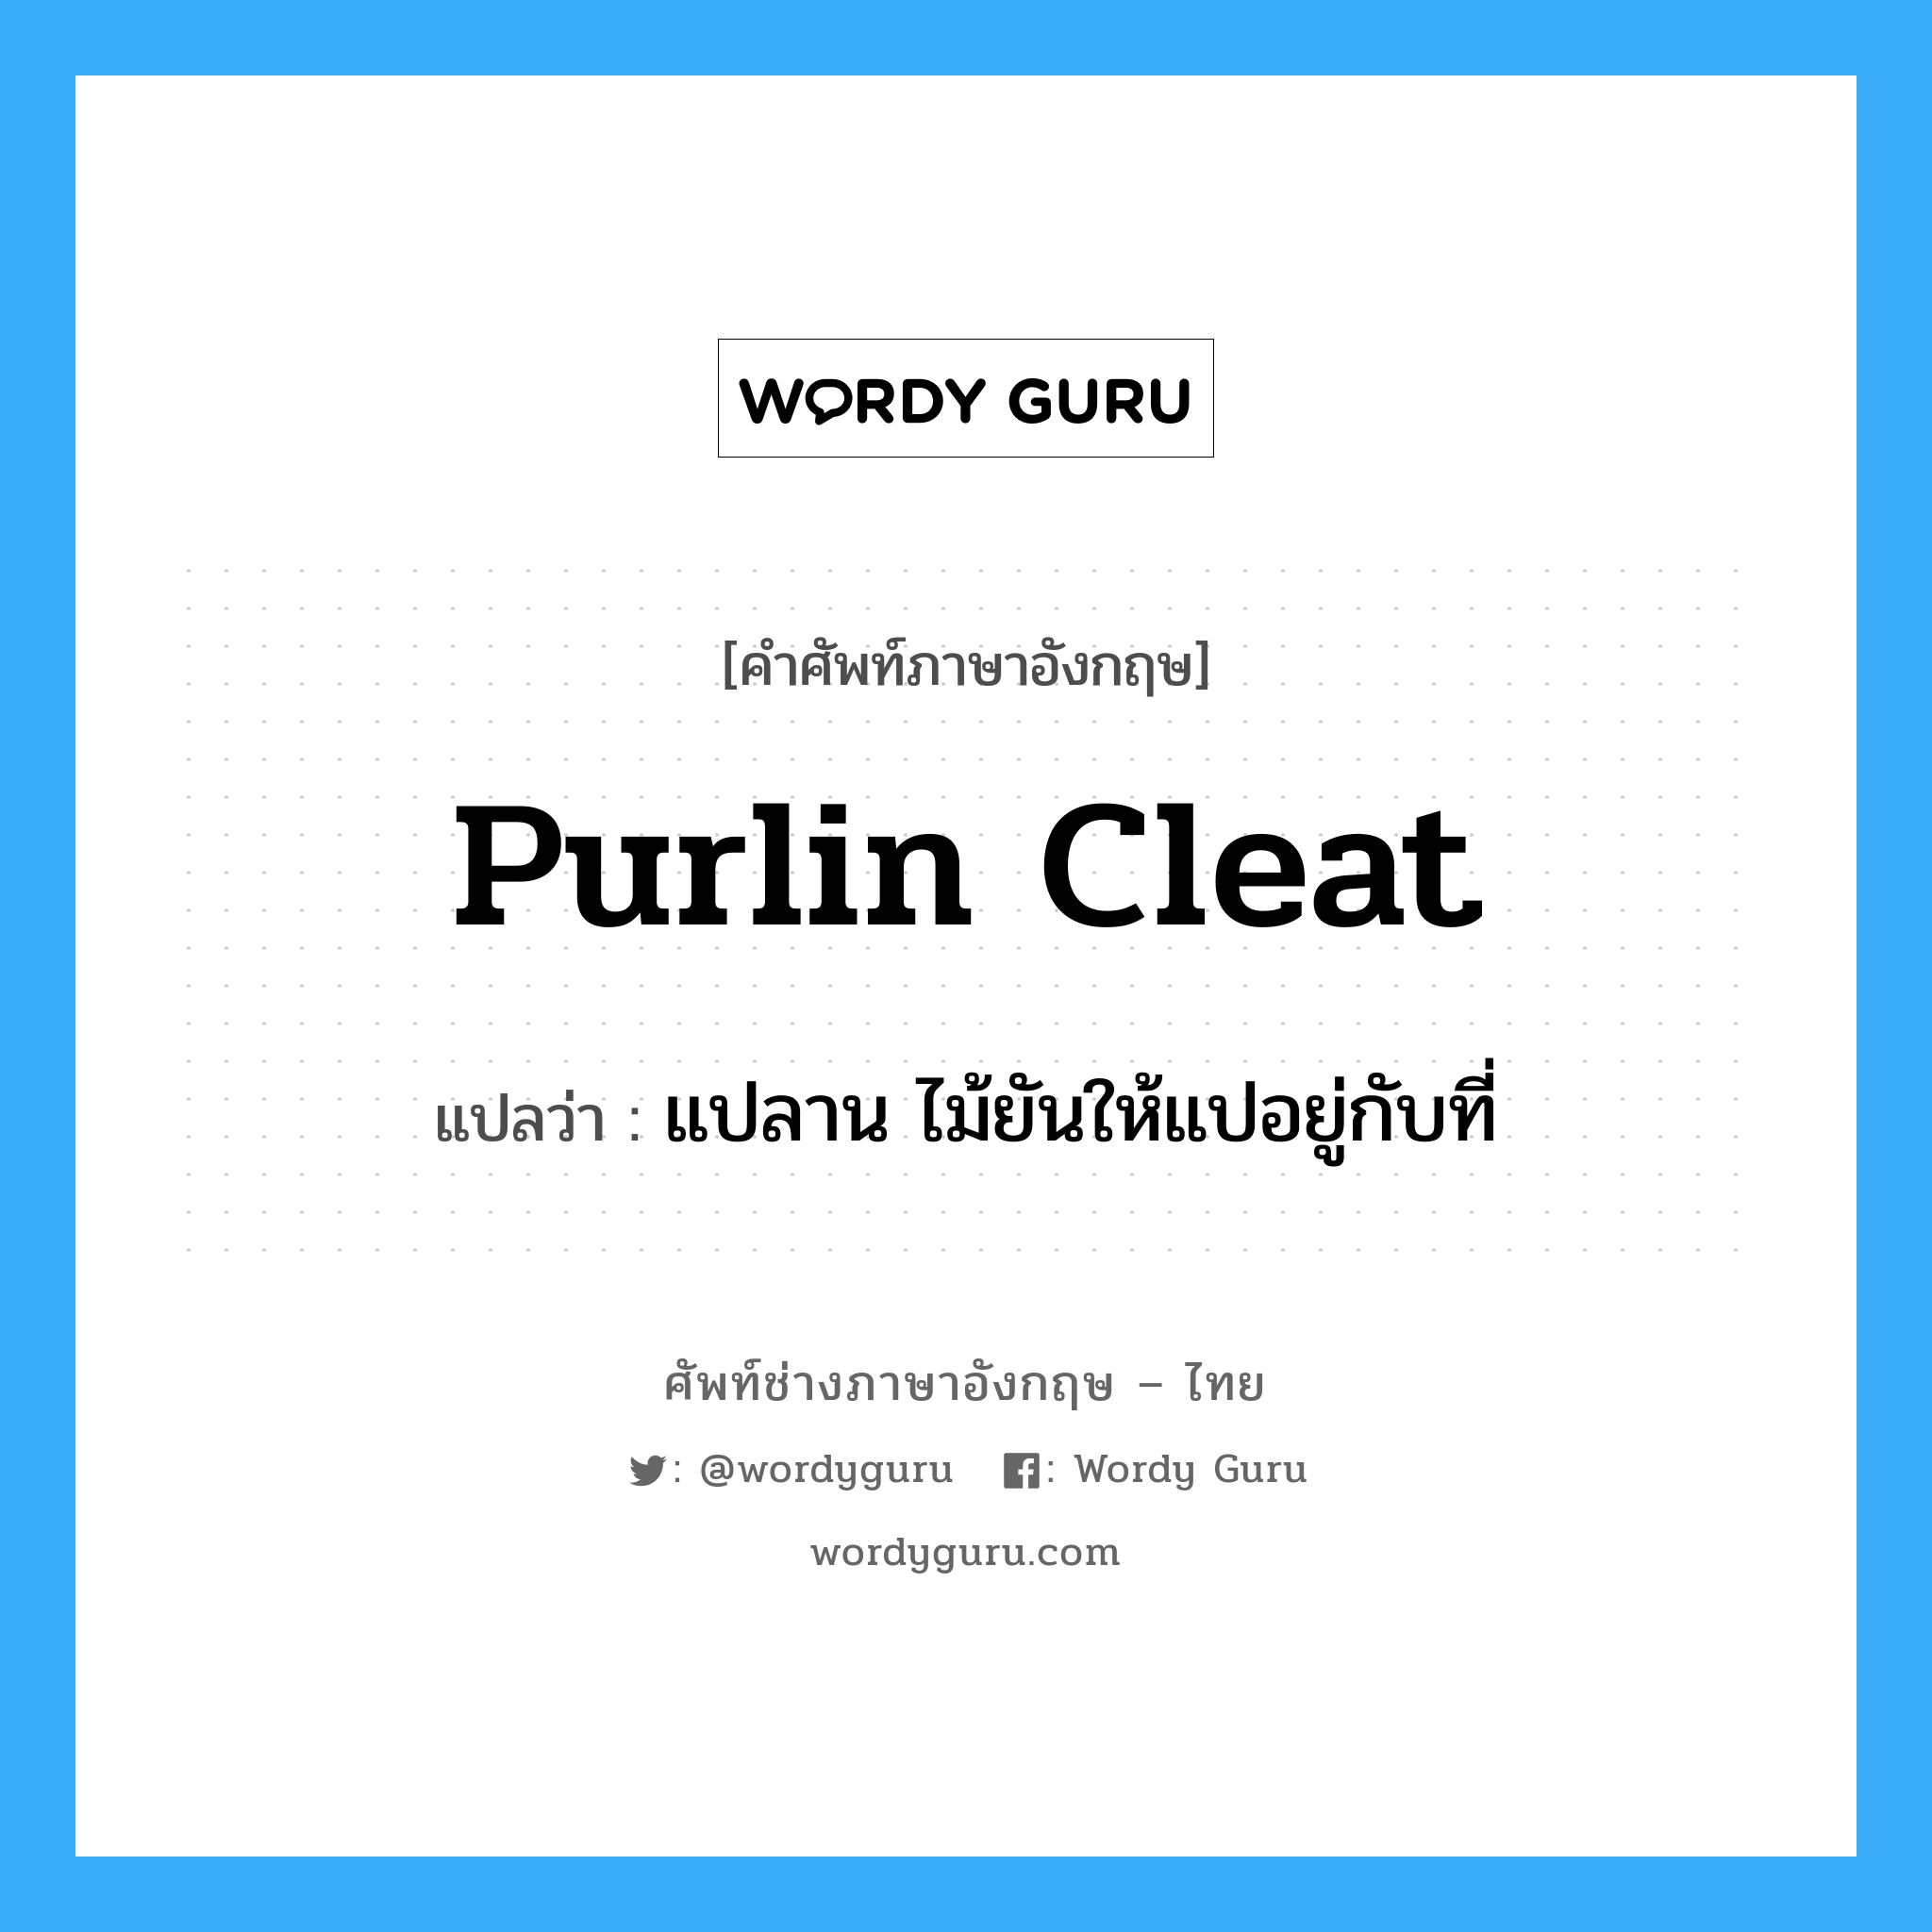 purlin cleat แปลว่า?, คำศัพท์ช่างภาษาอังกฤษ - ไทย purlin cleat คำศัพท์ภาษาอังกฤษ purlin cleat แปลว่า แปลาน ไม้ยันให้แปอยู่กับที่